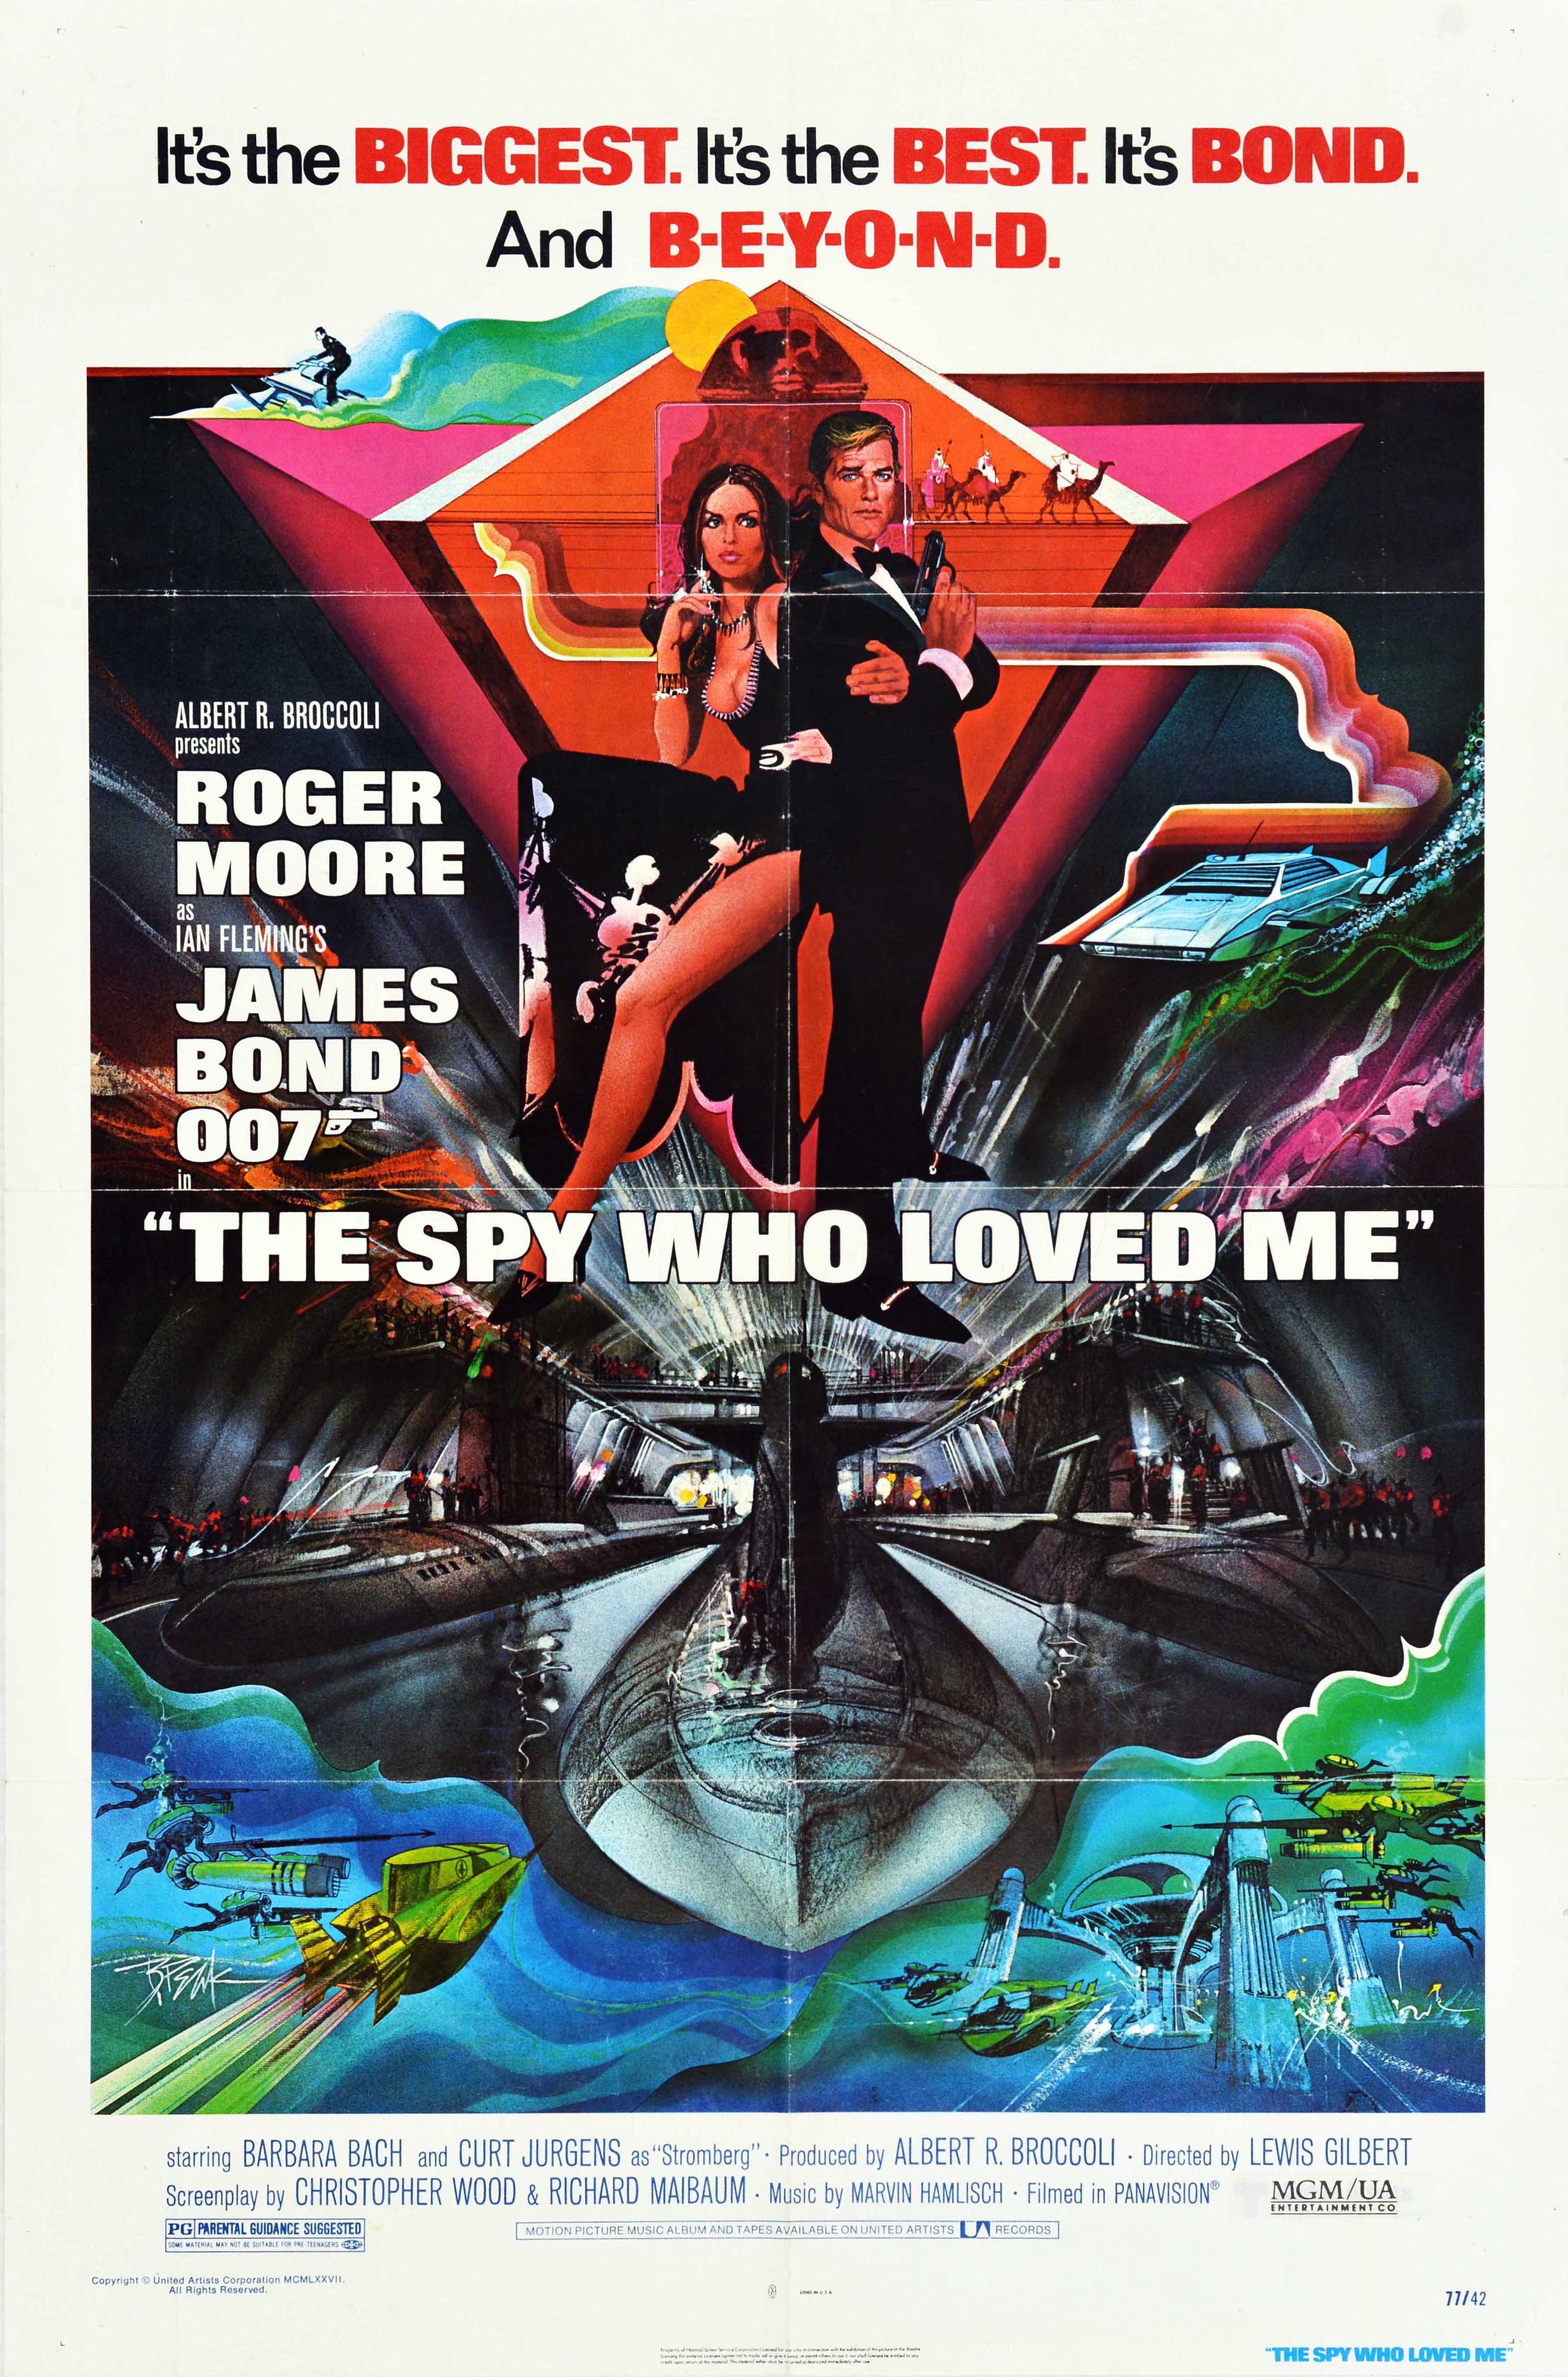 Bob Peak Print - Original Vintage Film Poster For James Bond 007 The Spy Who Loved Me Roger Moore